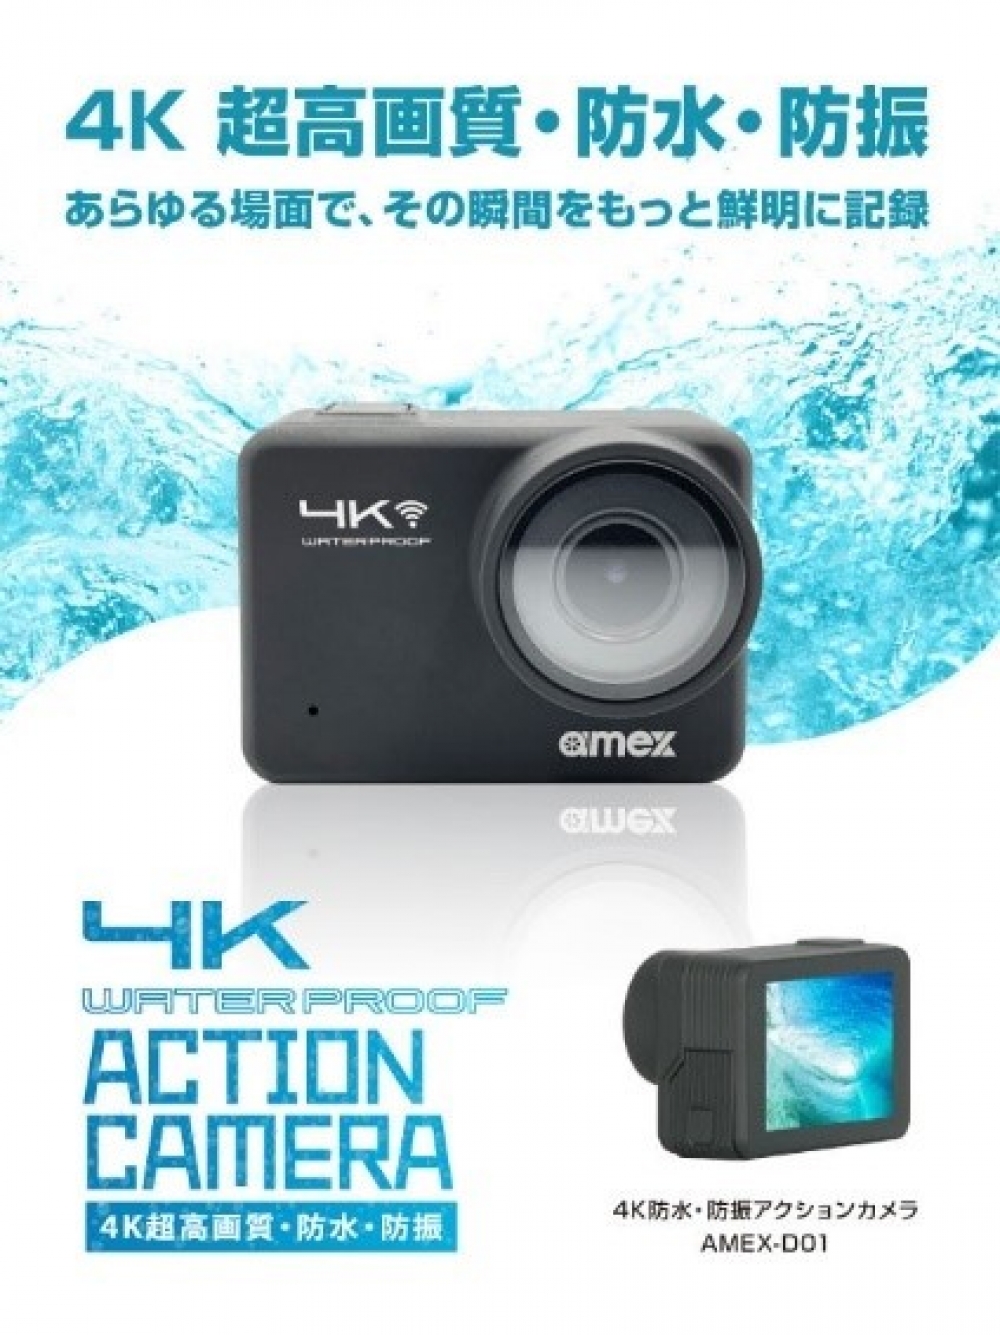 ㉑4K防水・防振アクションカメラ AMEX-D01